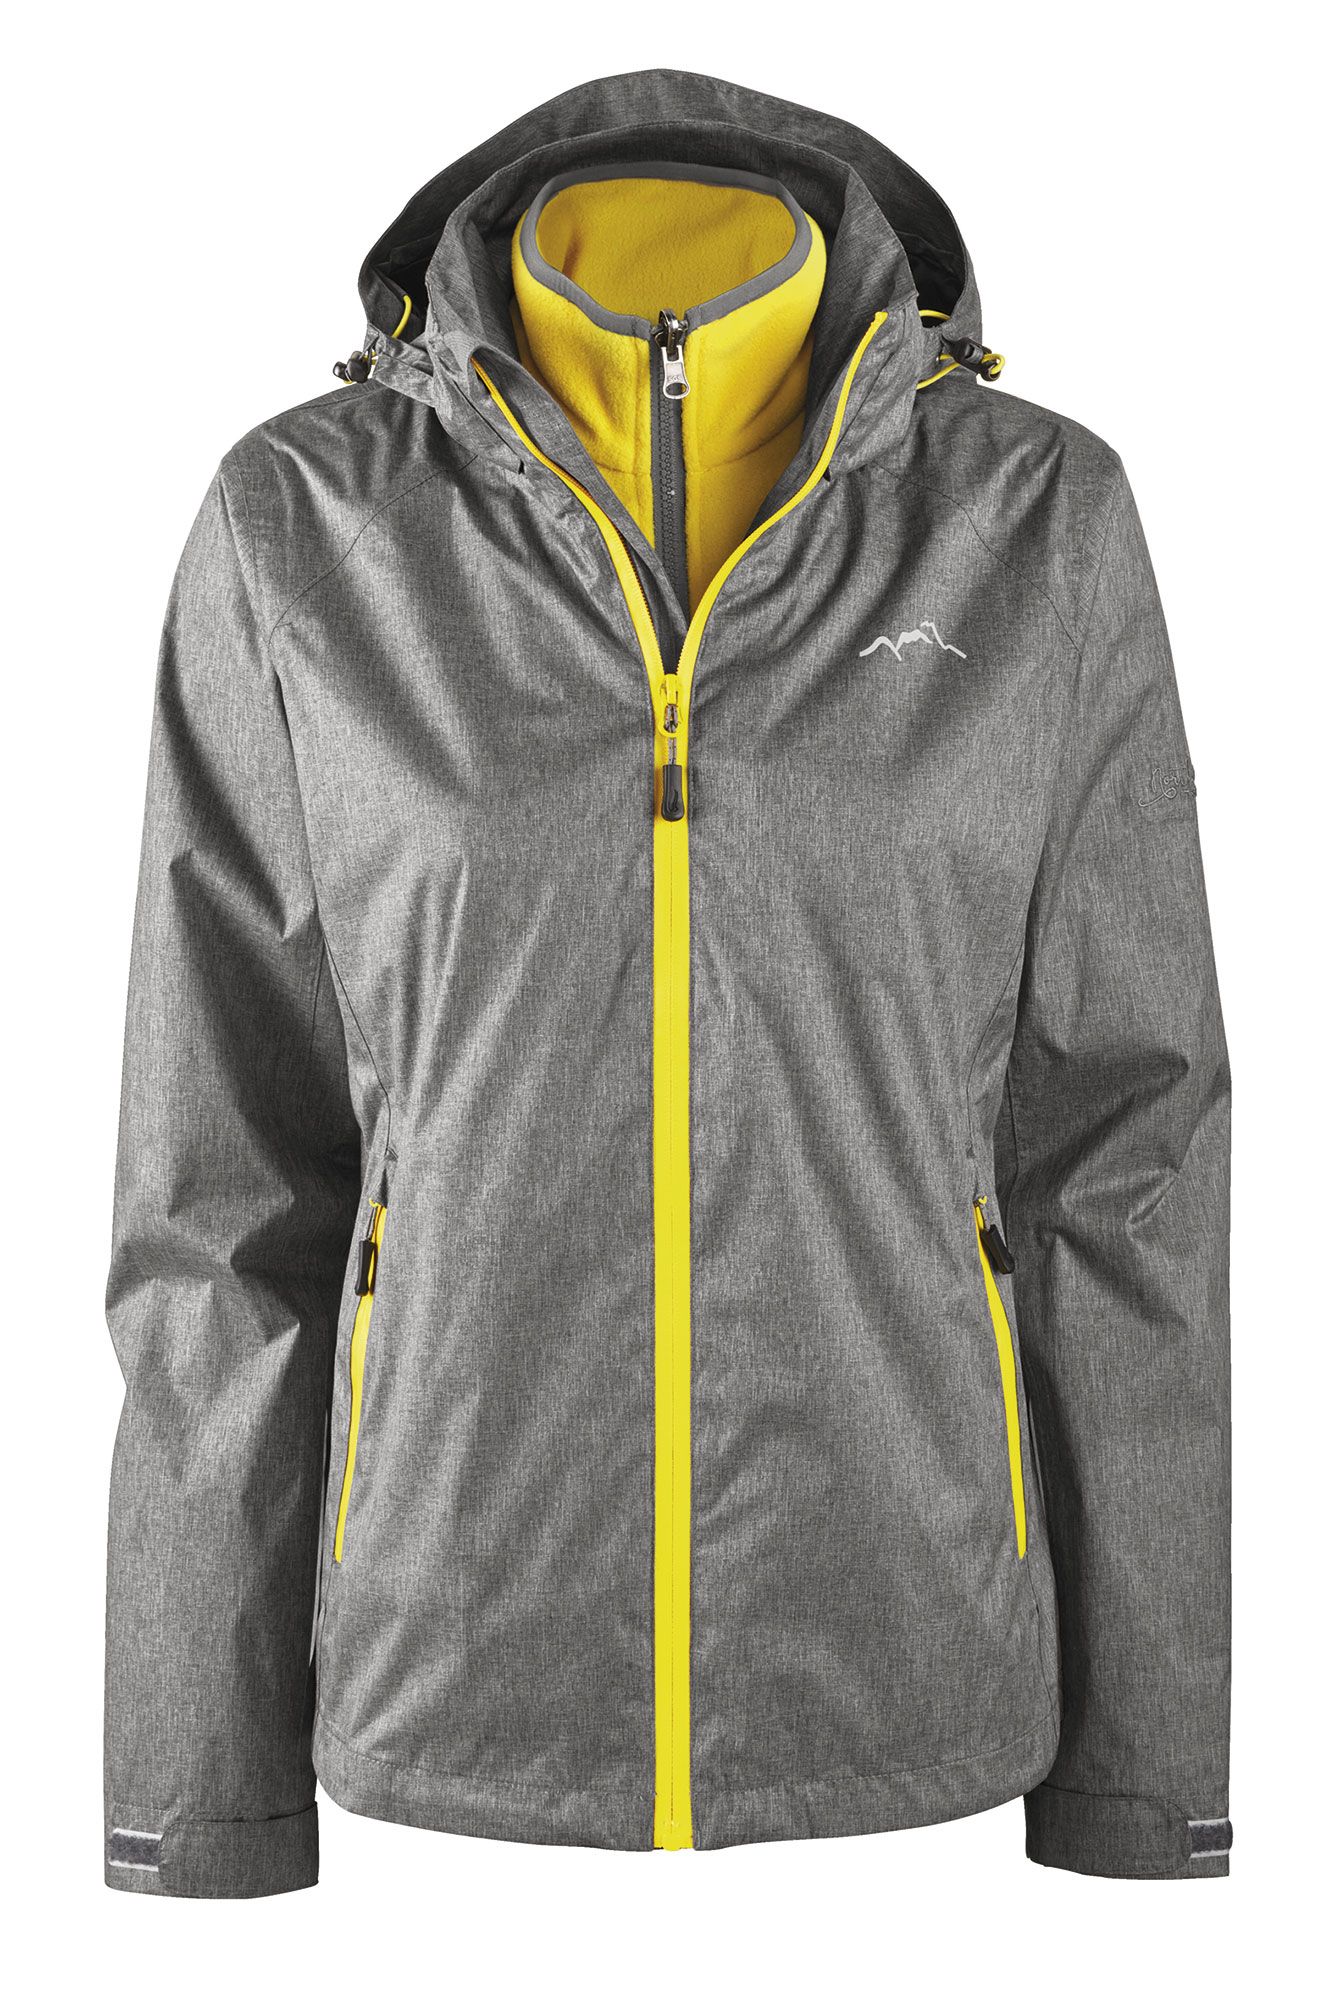 Crivit waterproof sports jacket with fleece inside Size: Medium